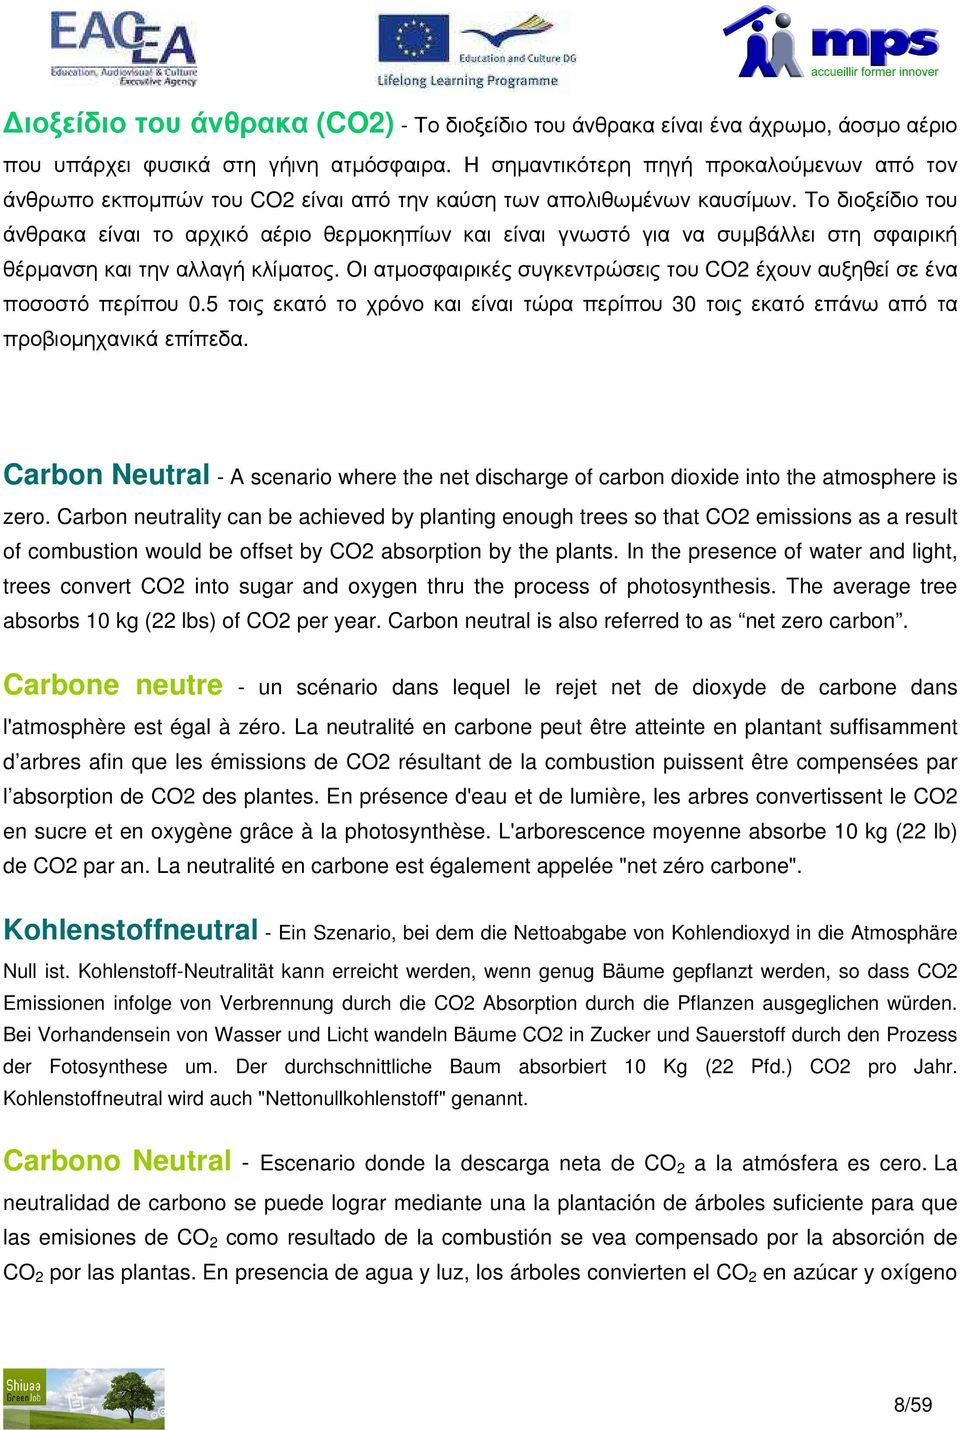 Το διοξείδιο του άνθρακα είναι το αρχικό αέριο θερµοκηπίων και είναι γνωστό για να συµβάλλει στη σφαιρική θέρµανση και την αλλαγή κλίµατος.